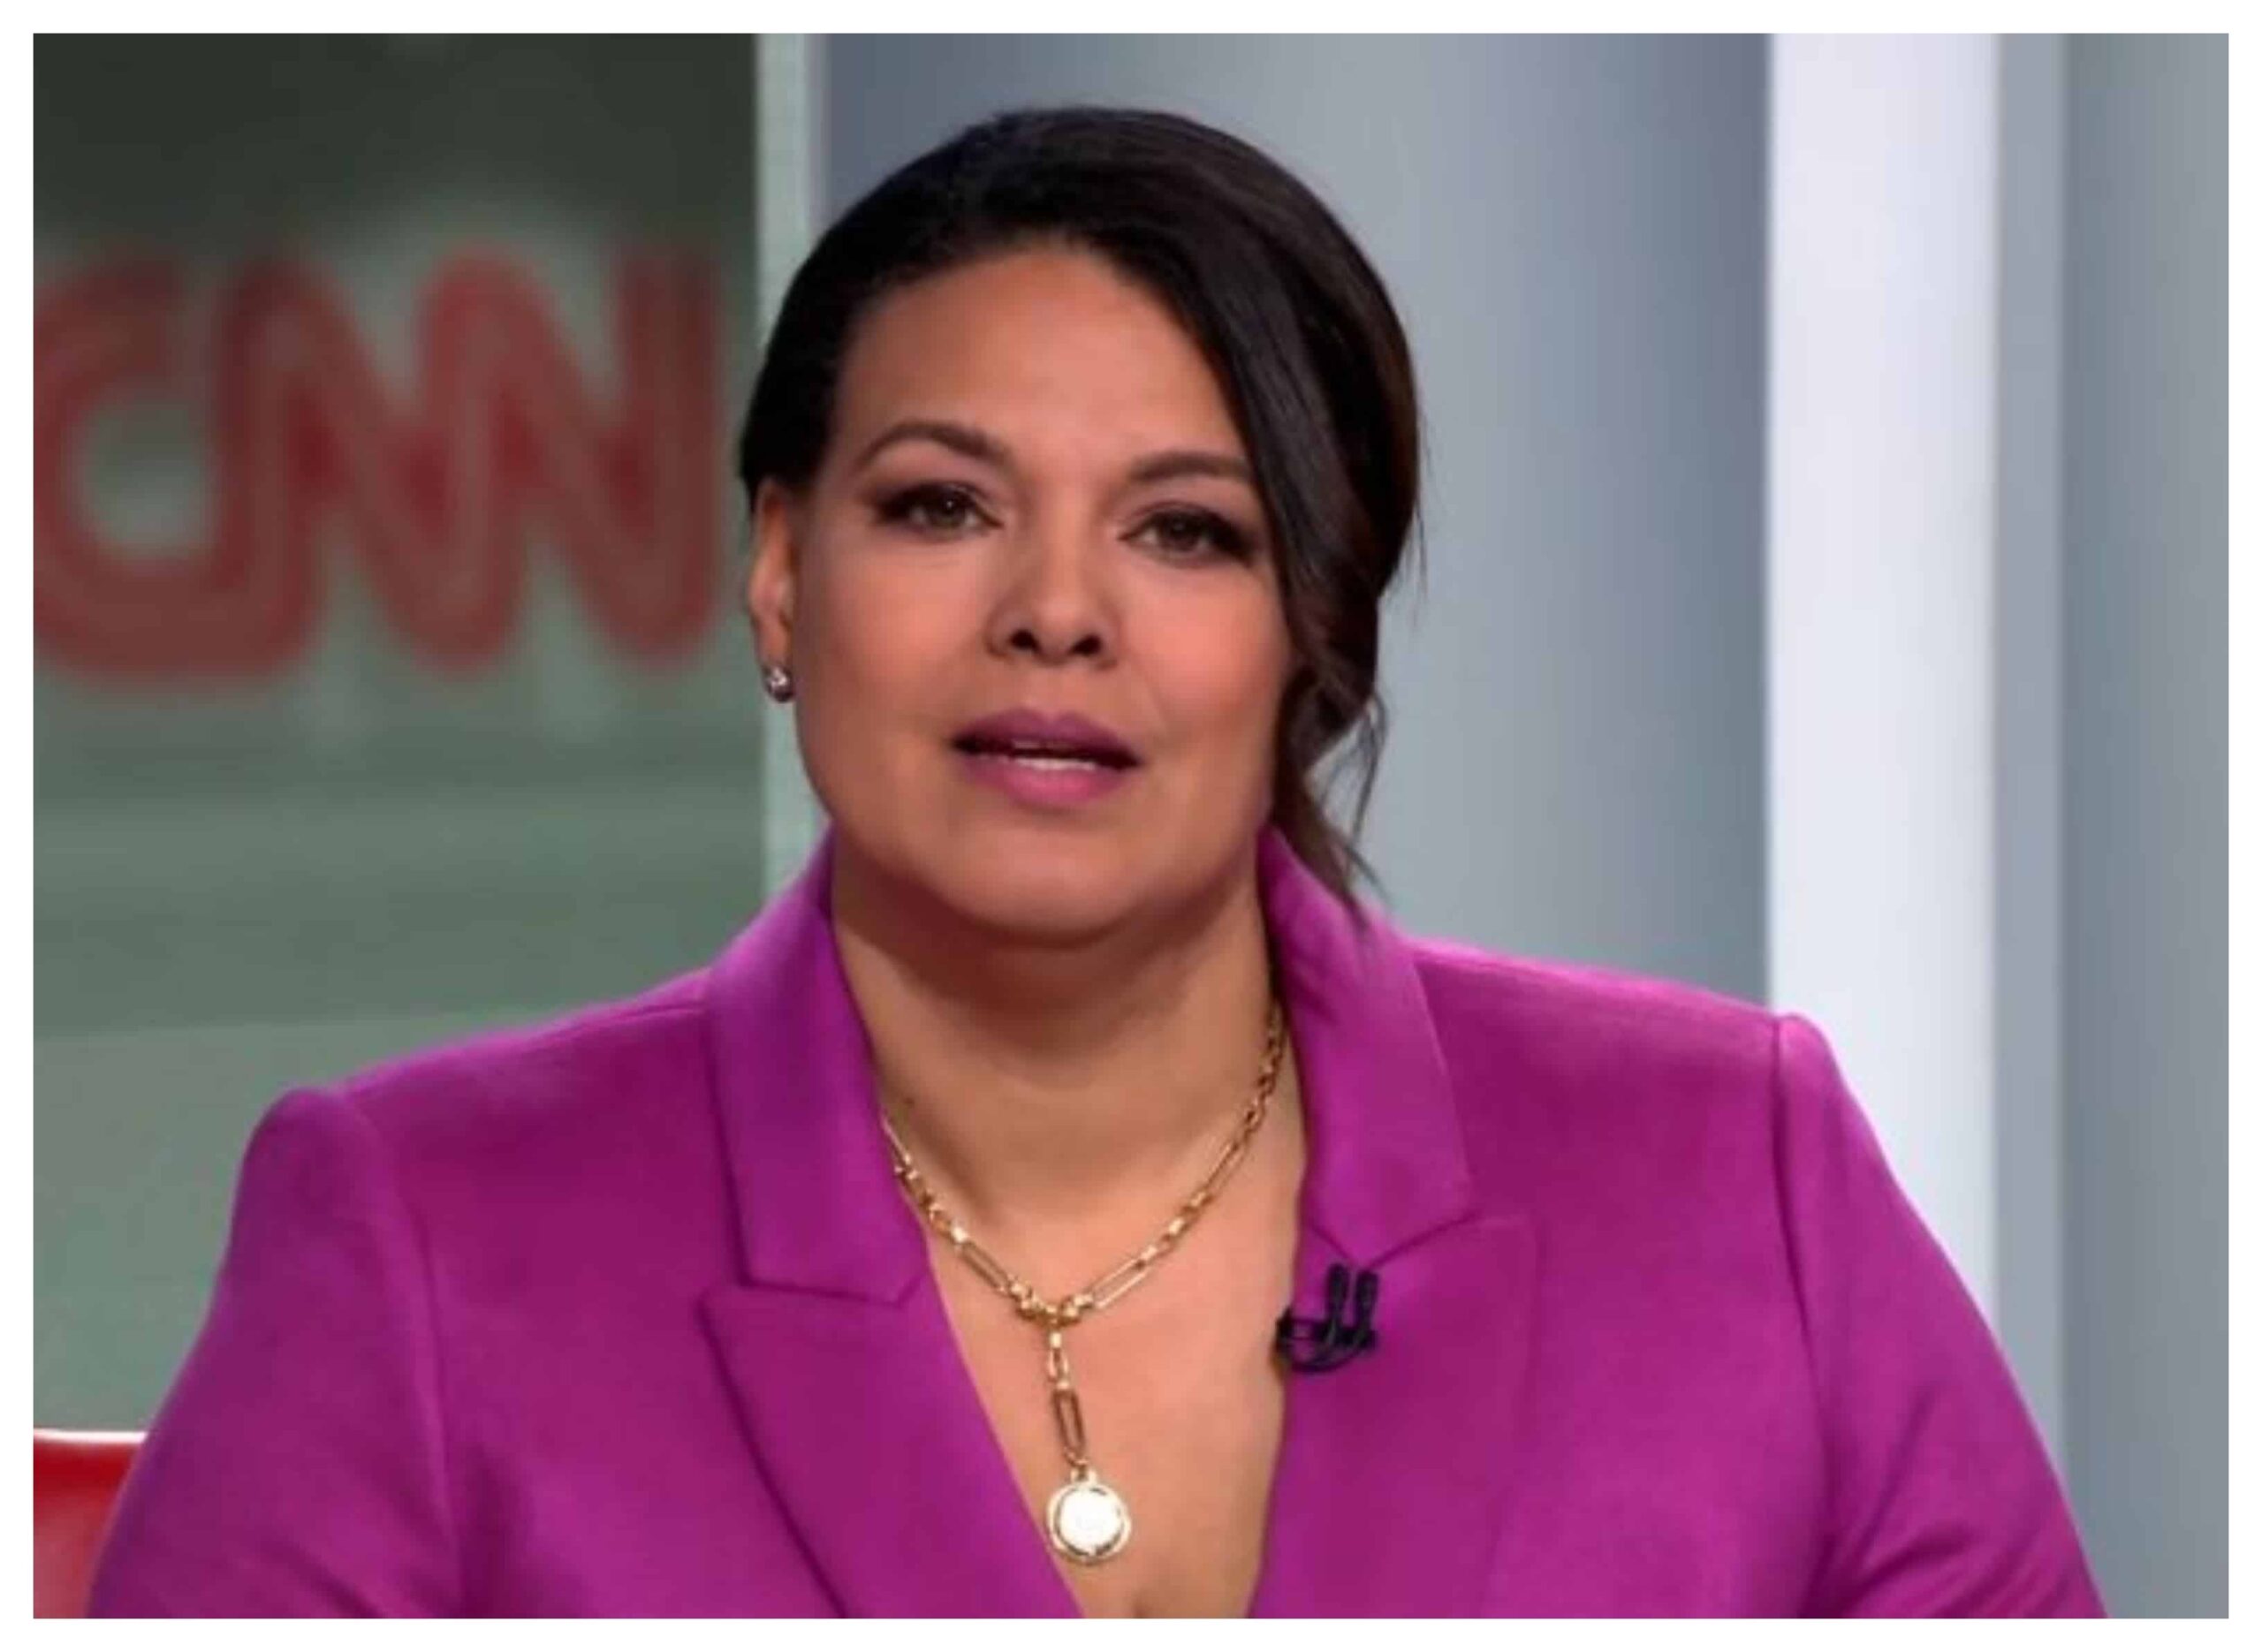 El emotivo discurso con el que la presentadora de CNN, Sara Sidner, informó que padece cáncer de mama